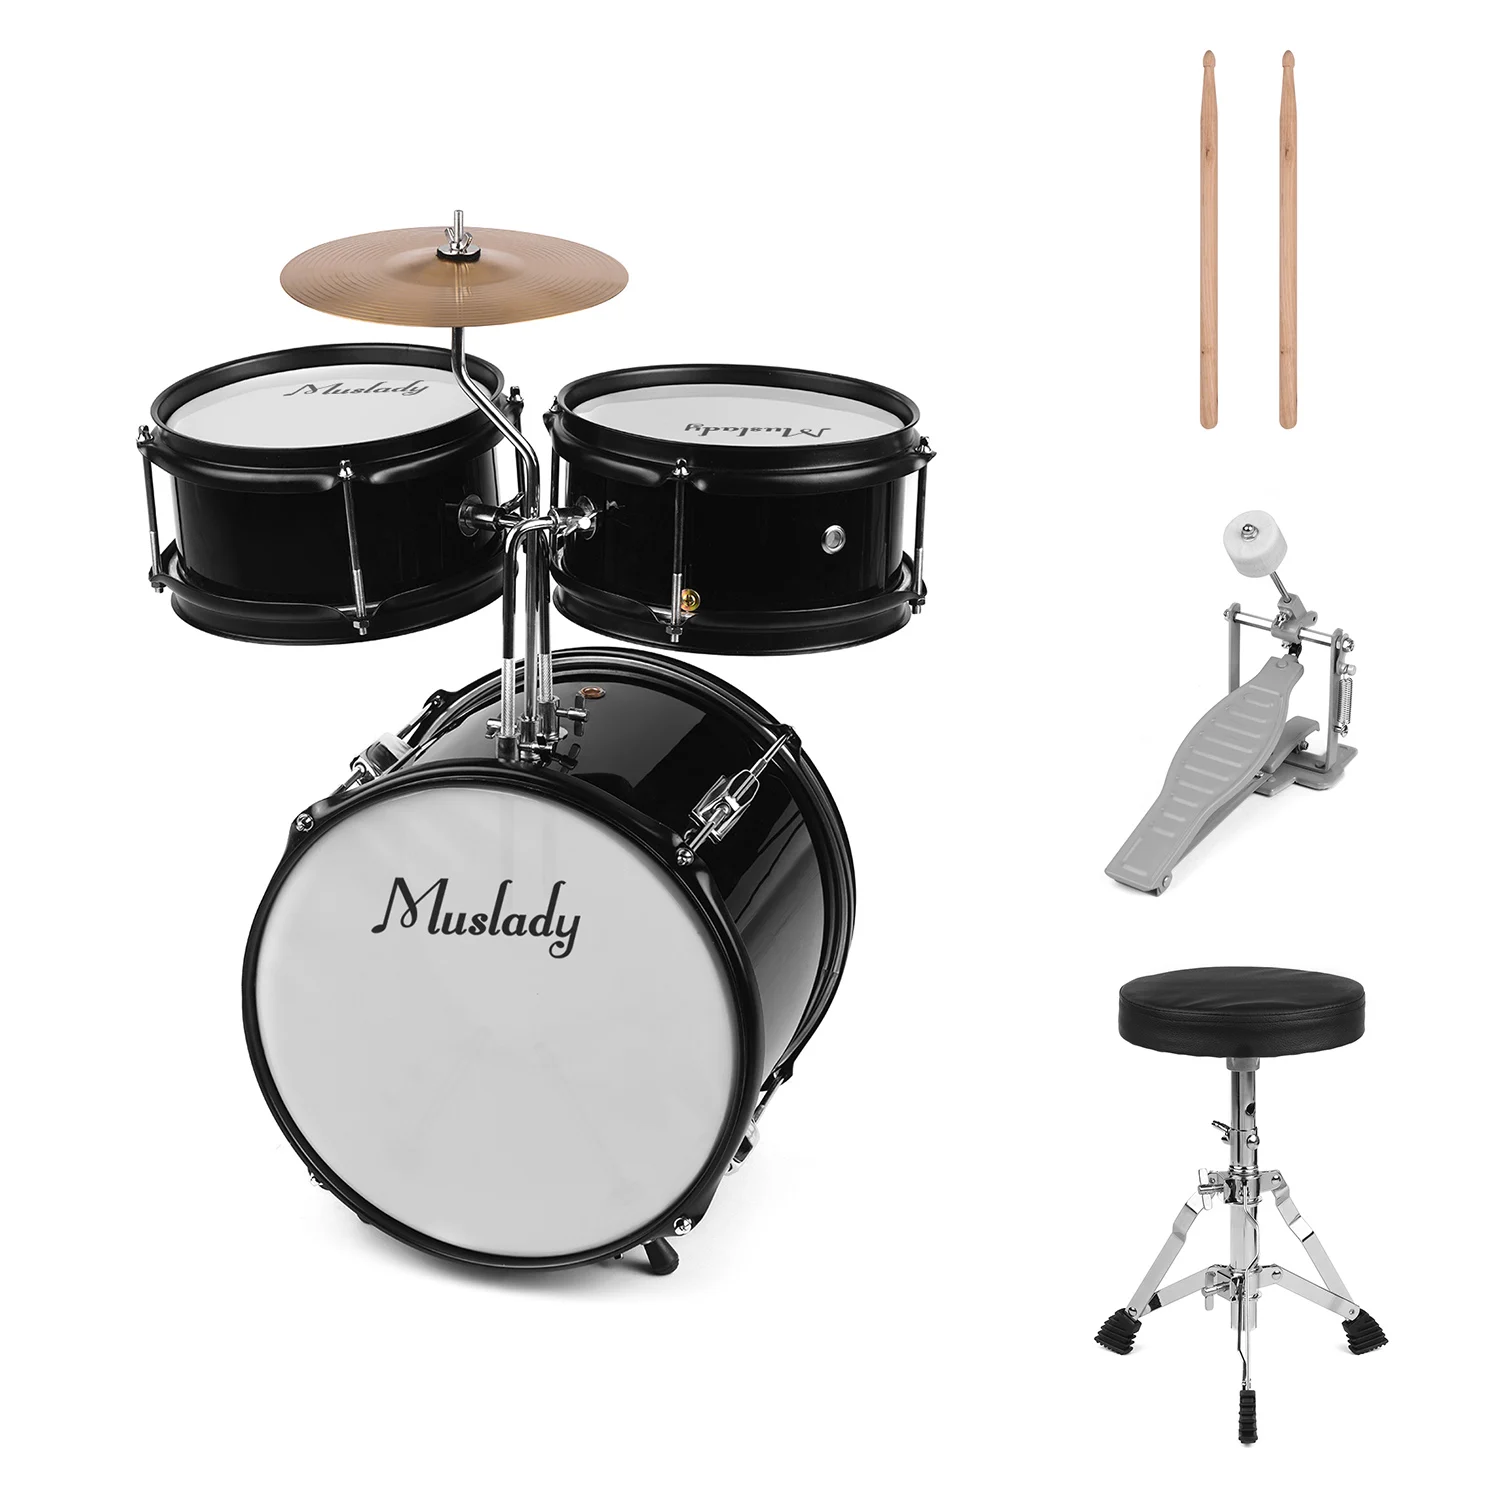 Muslady 3-pieces Drum Kit Дети Junior Drum Set ударный музыкальный инструмент с тарелки барабанные палочки регулируемый стул